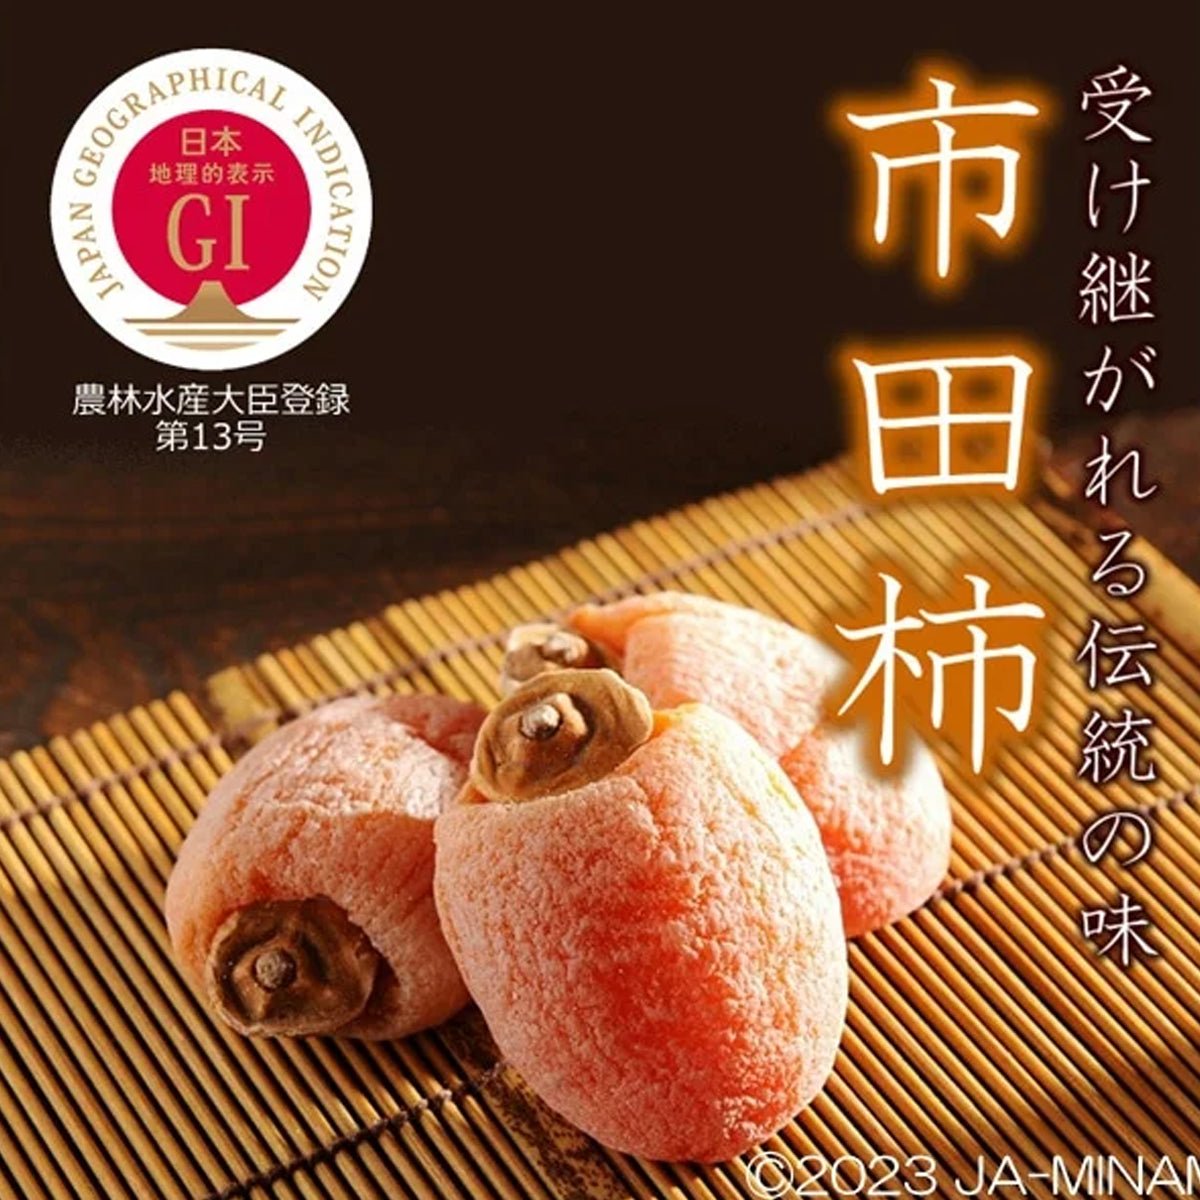 Ichida Gaki Dried Persimmon(Gift Box) 700g - Tokyo Fresh Direct